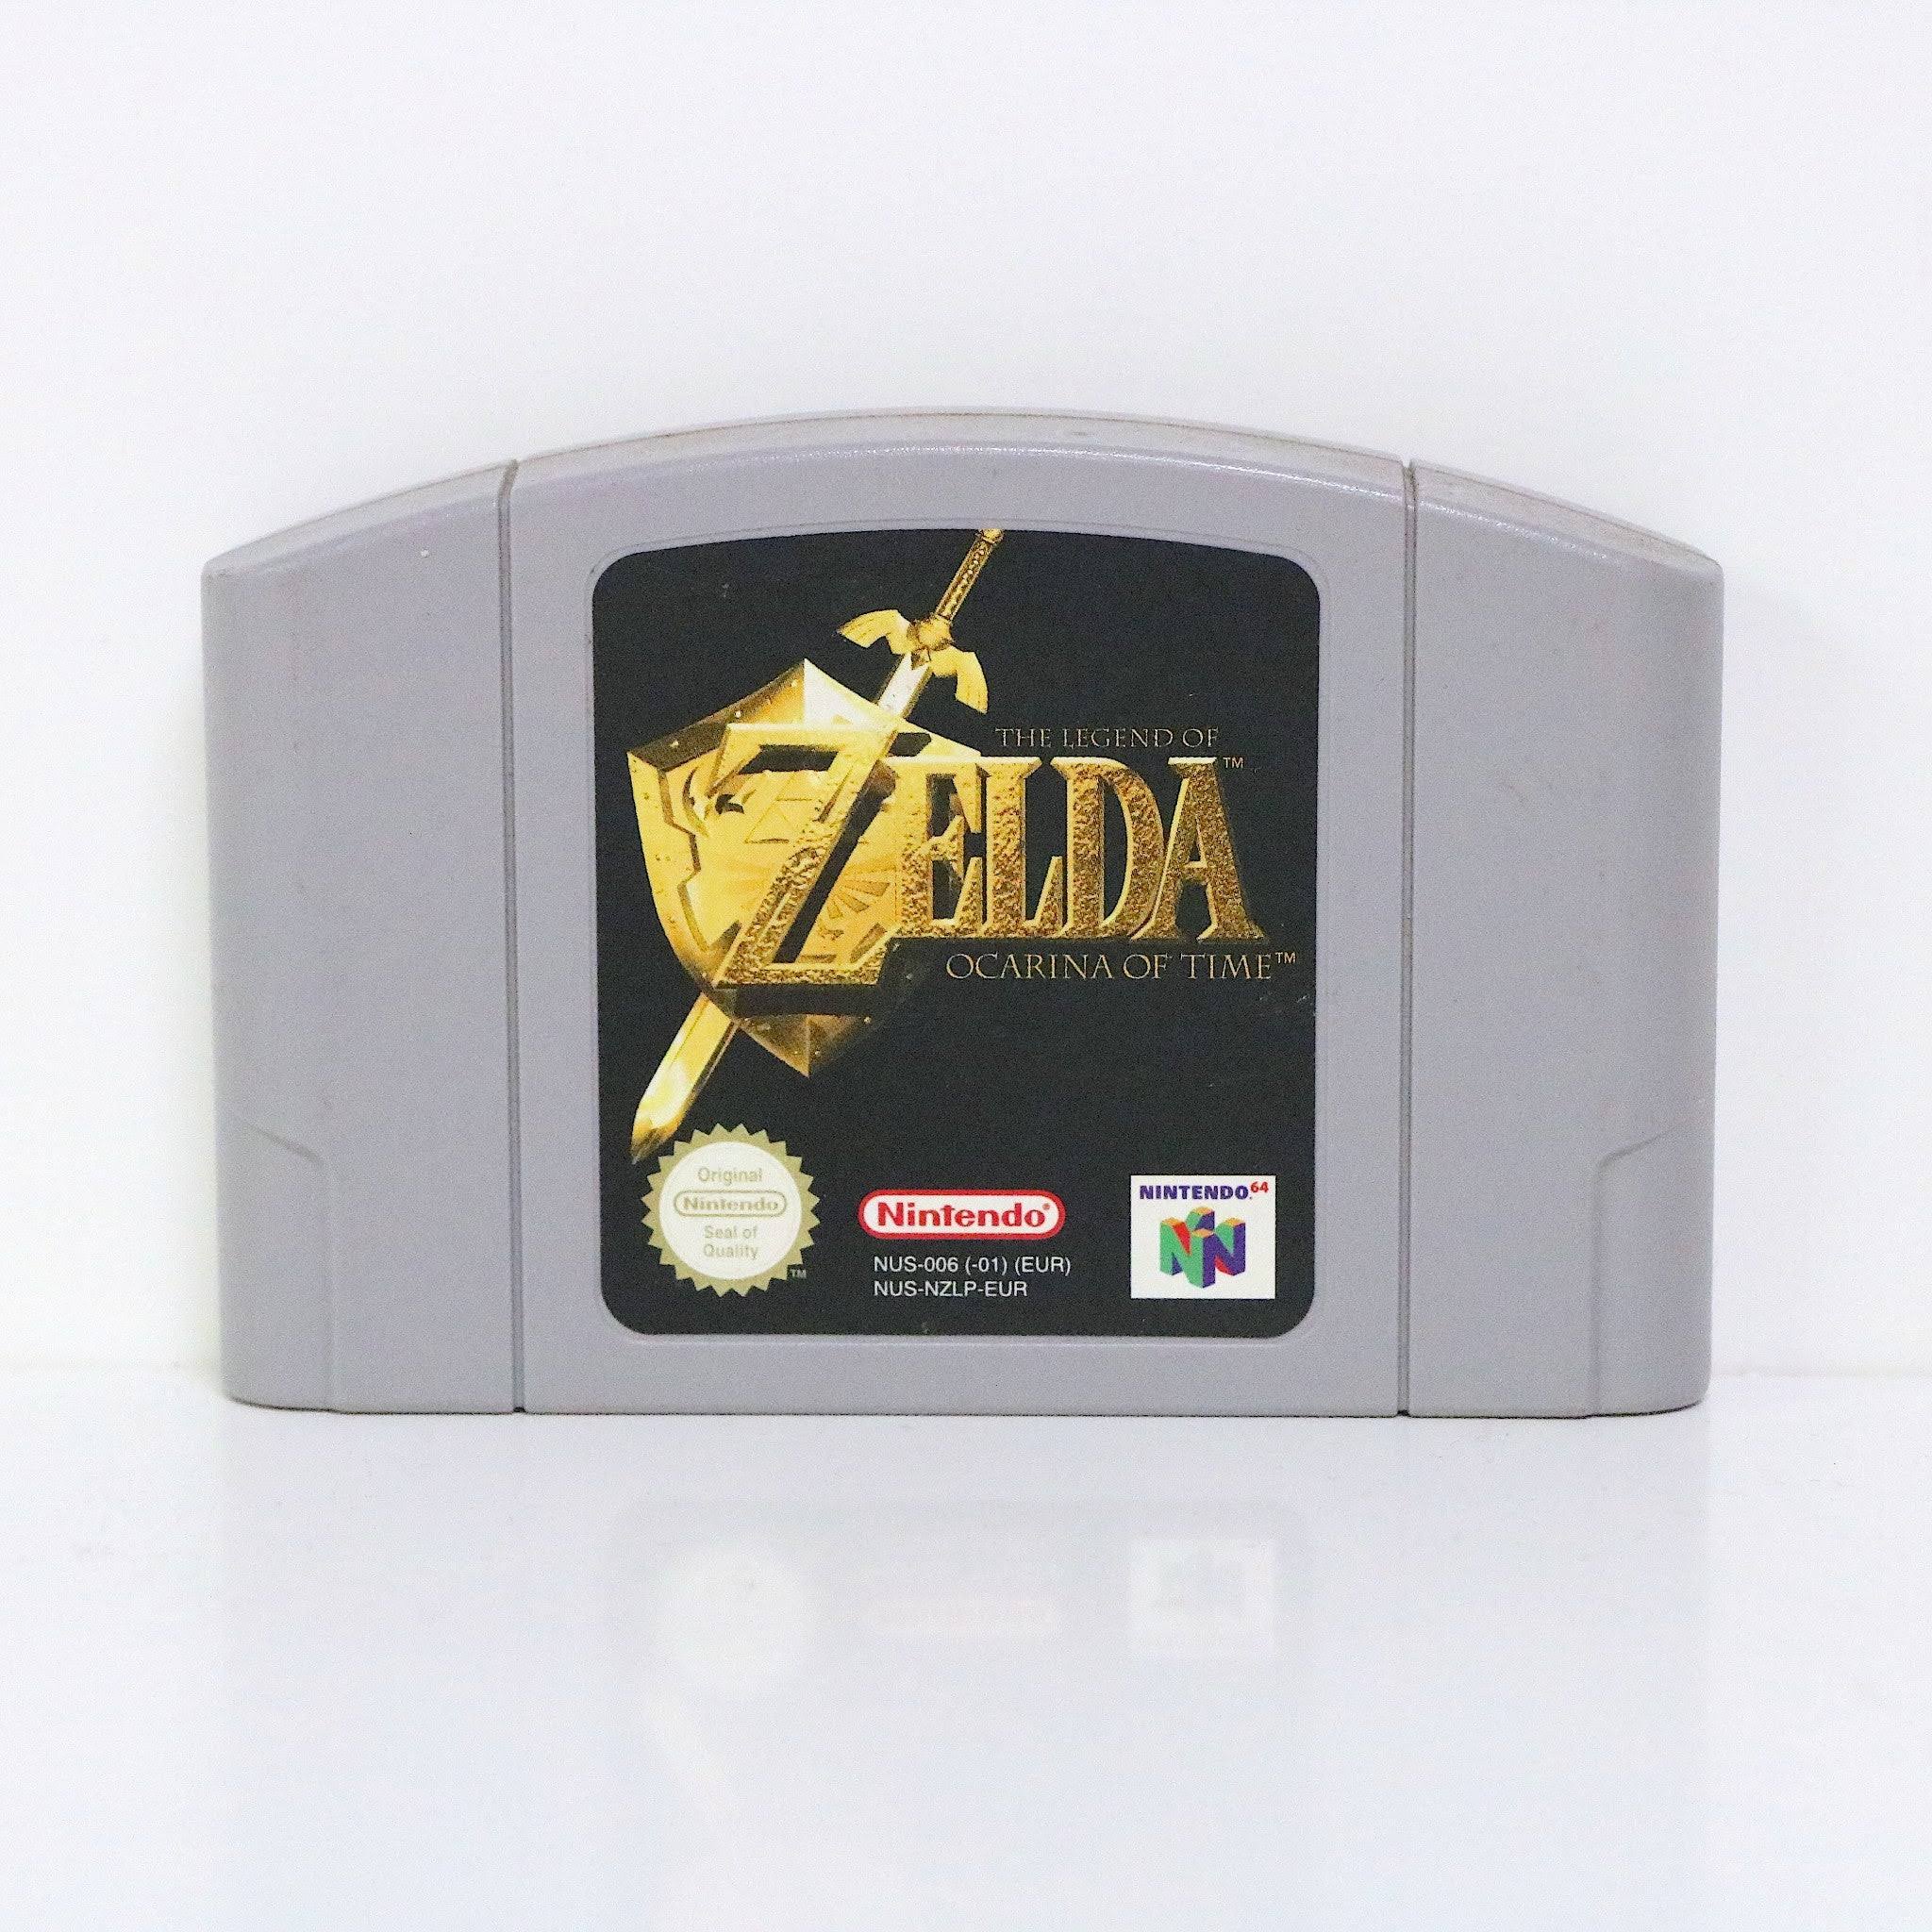 The Legend of Zelda: Ocarina of Time Nintendo 64 N64 PAL